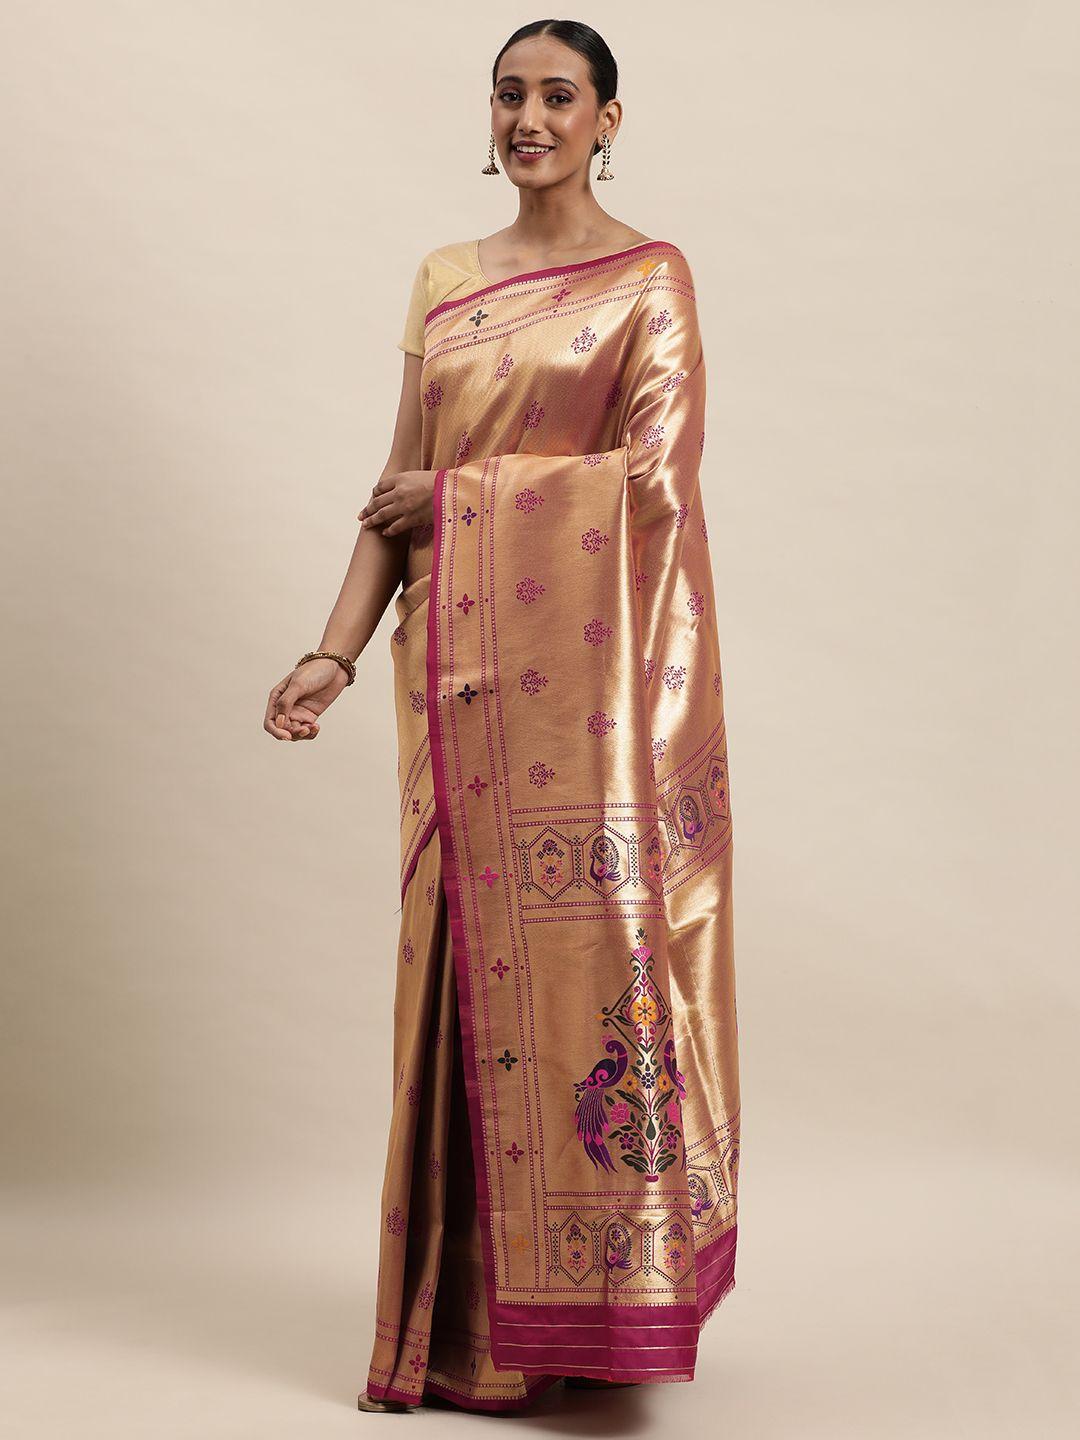 royal rajgharana saree burgundy & golden ethnic motifs woven design zari paithani sarees